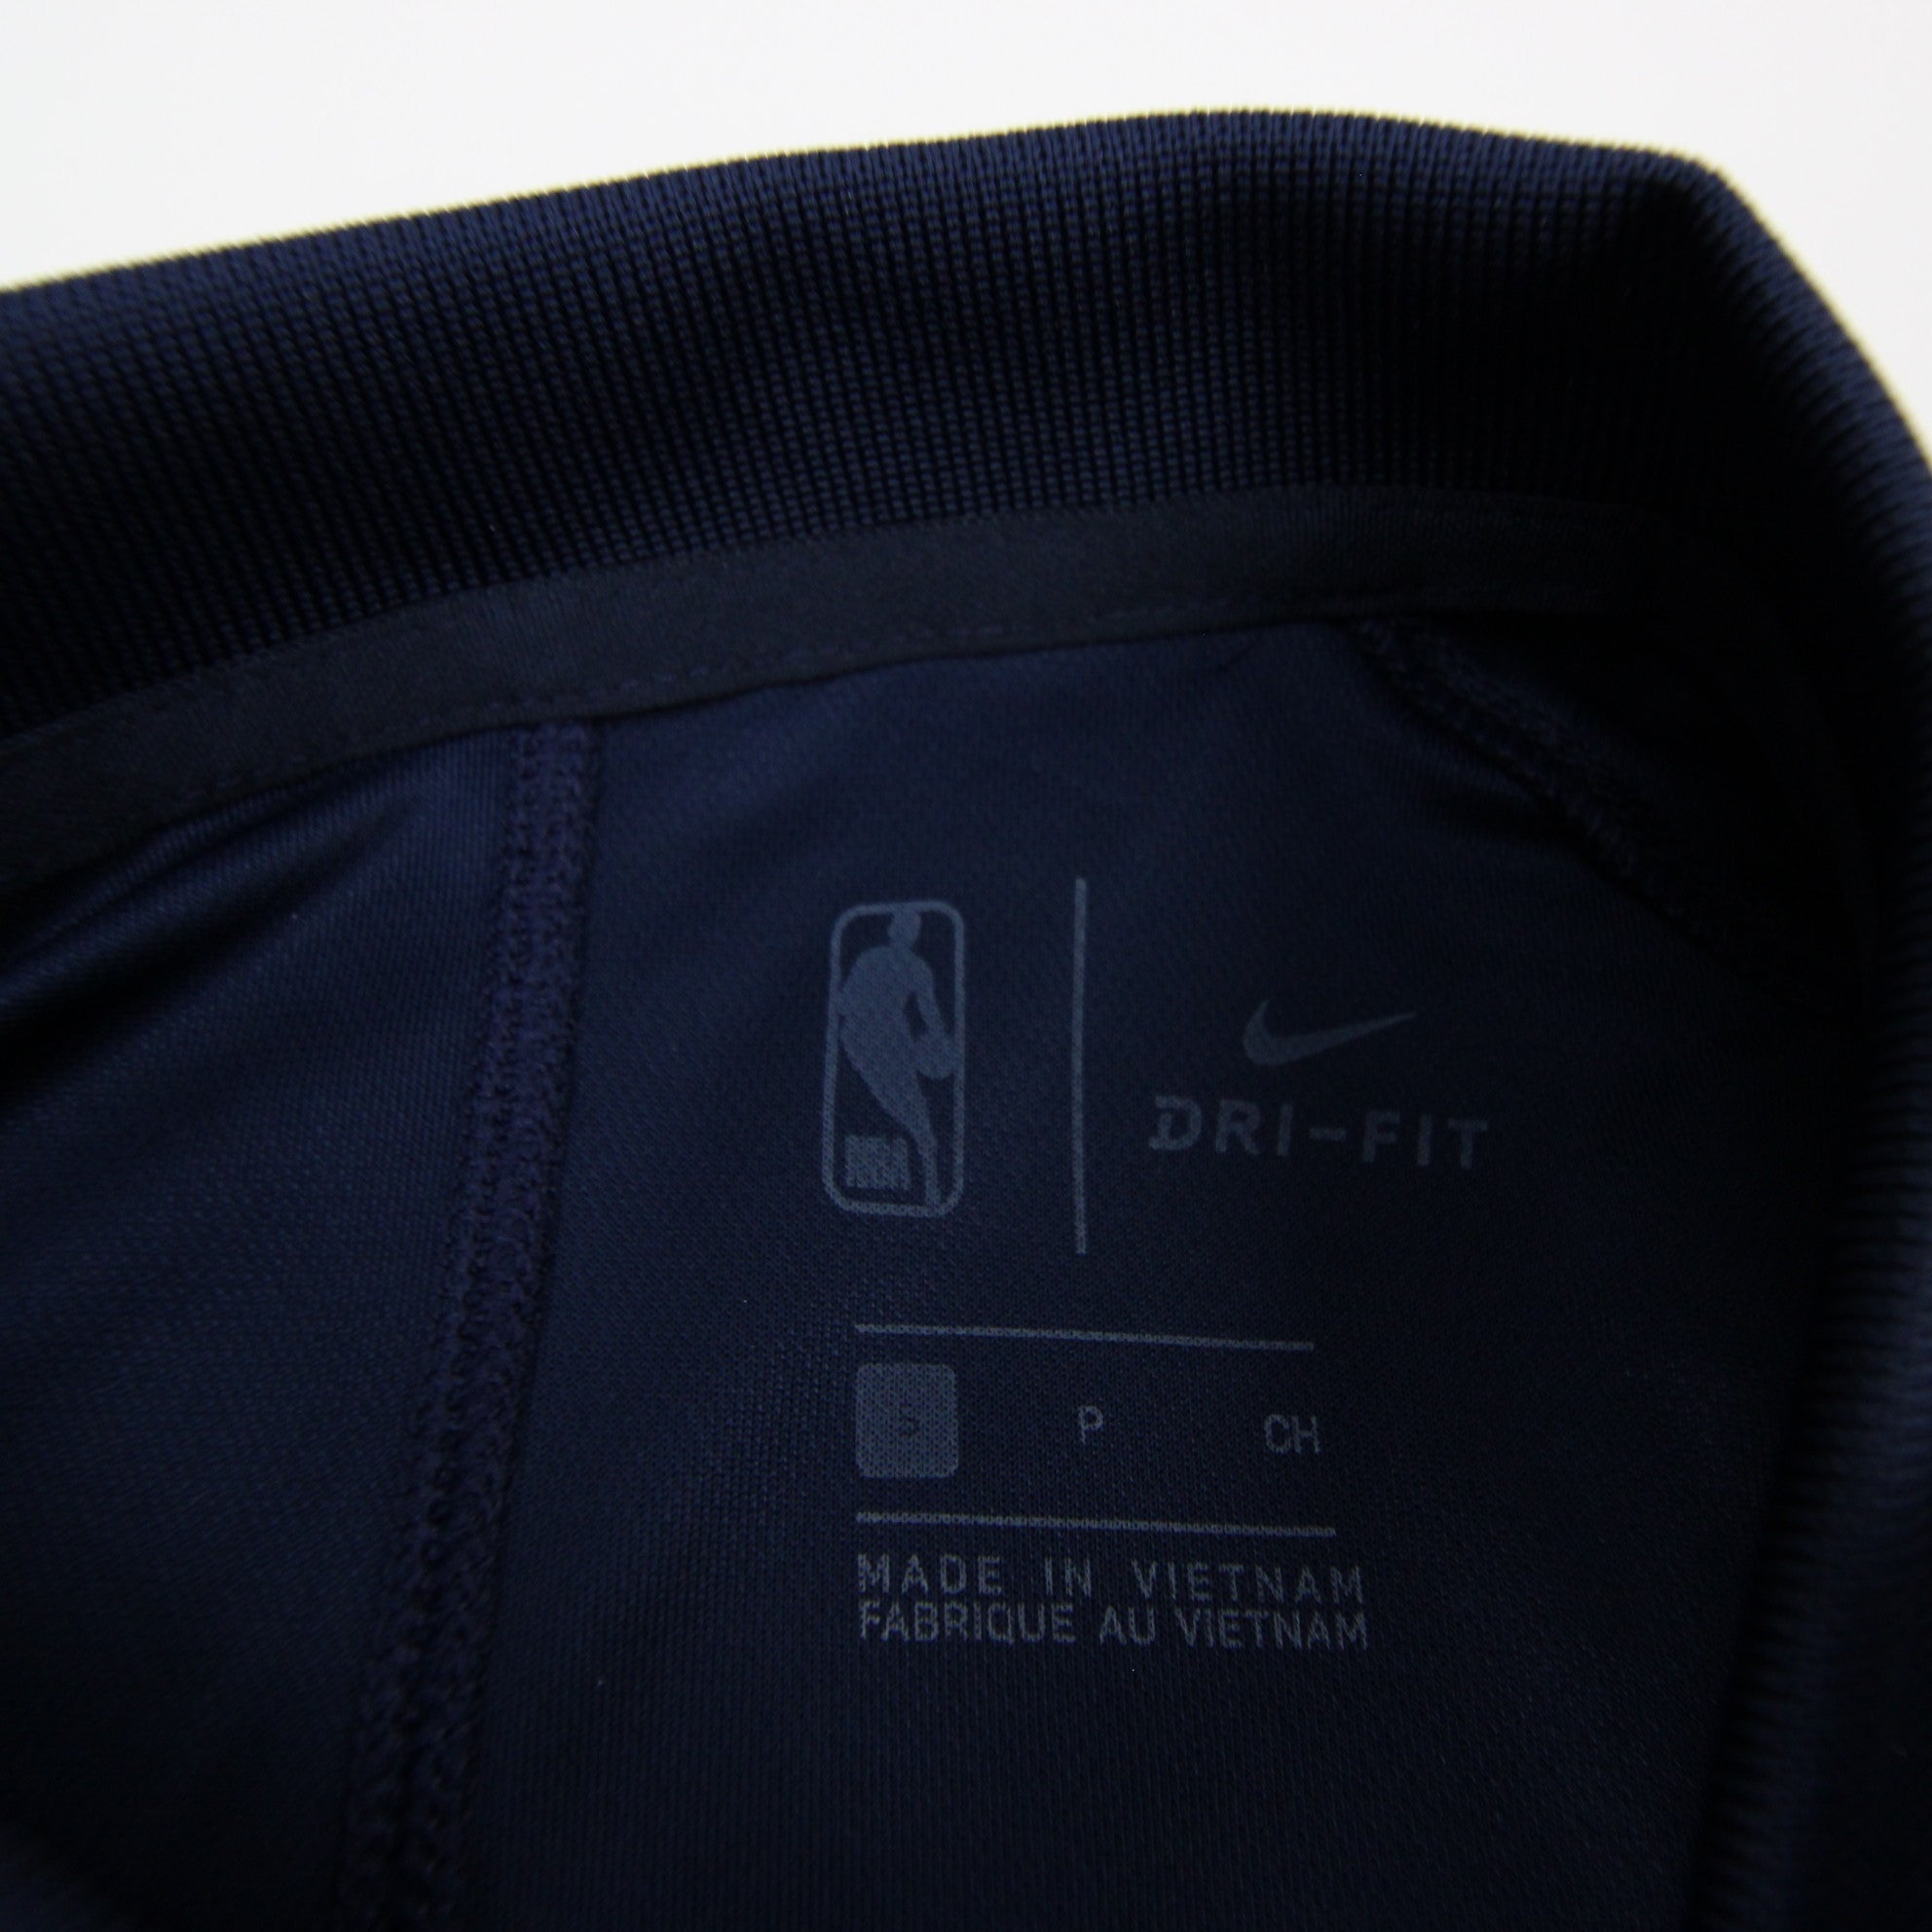 Washington Wizards Nike NBA Authentics Dri-Fit Polo Men's Navy New